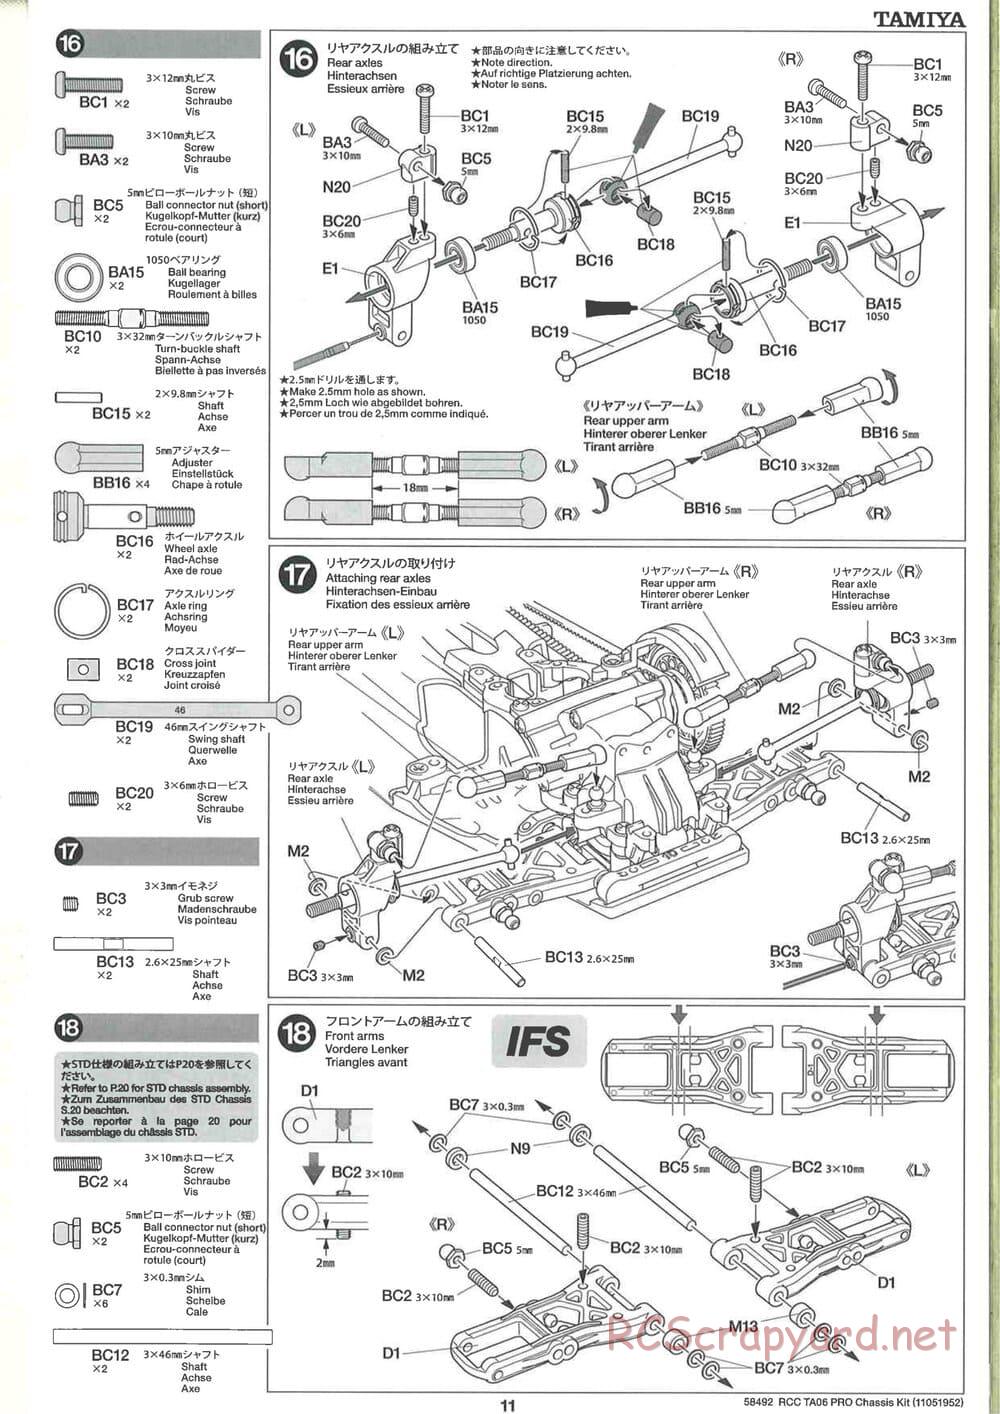 Tamiya - TA06 Pro Chassis - Manual - Page 11